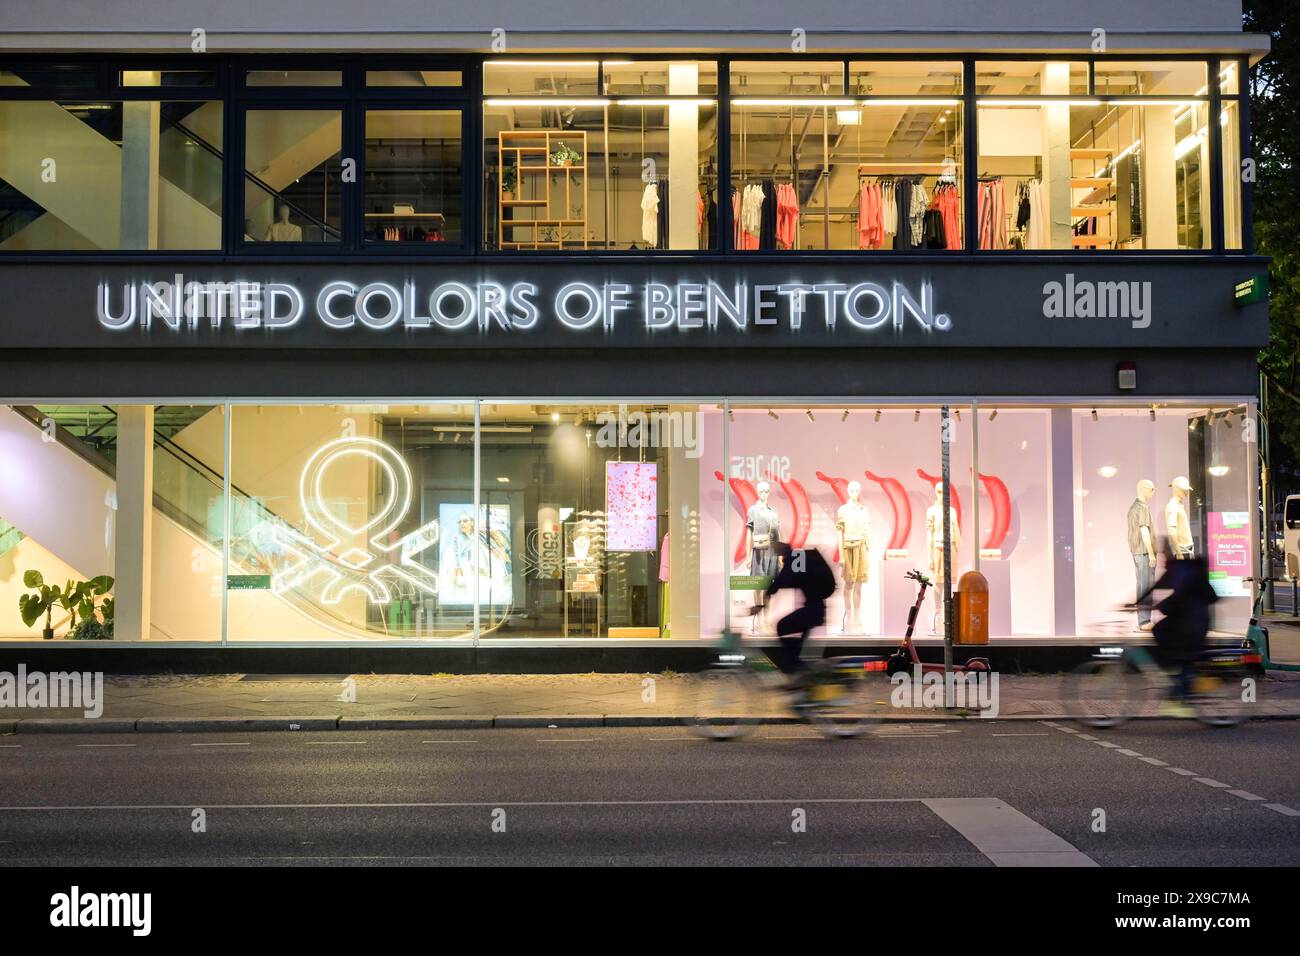 Vereinigte Farben von Benetton, Kleidung, Geschäft, Tauentzienstraße, Charlottenburg, Berlin, Deutschland Stockfoto